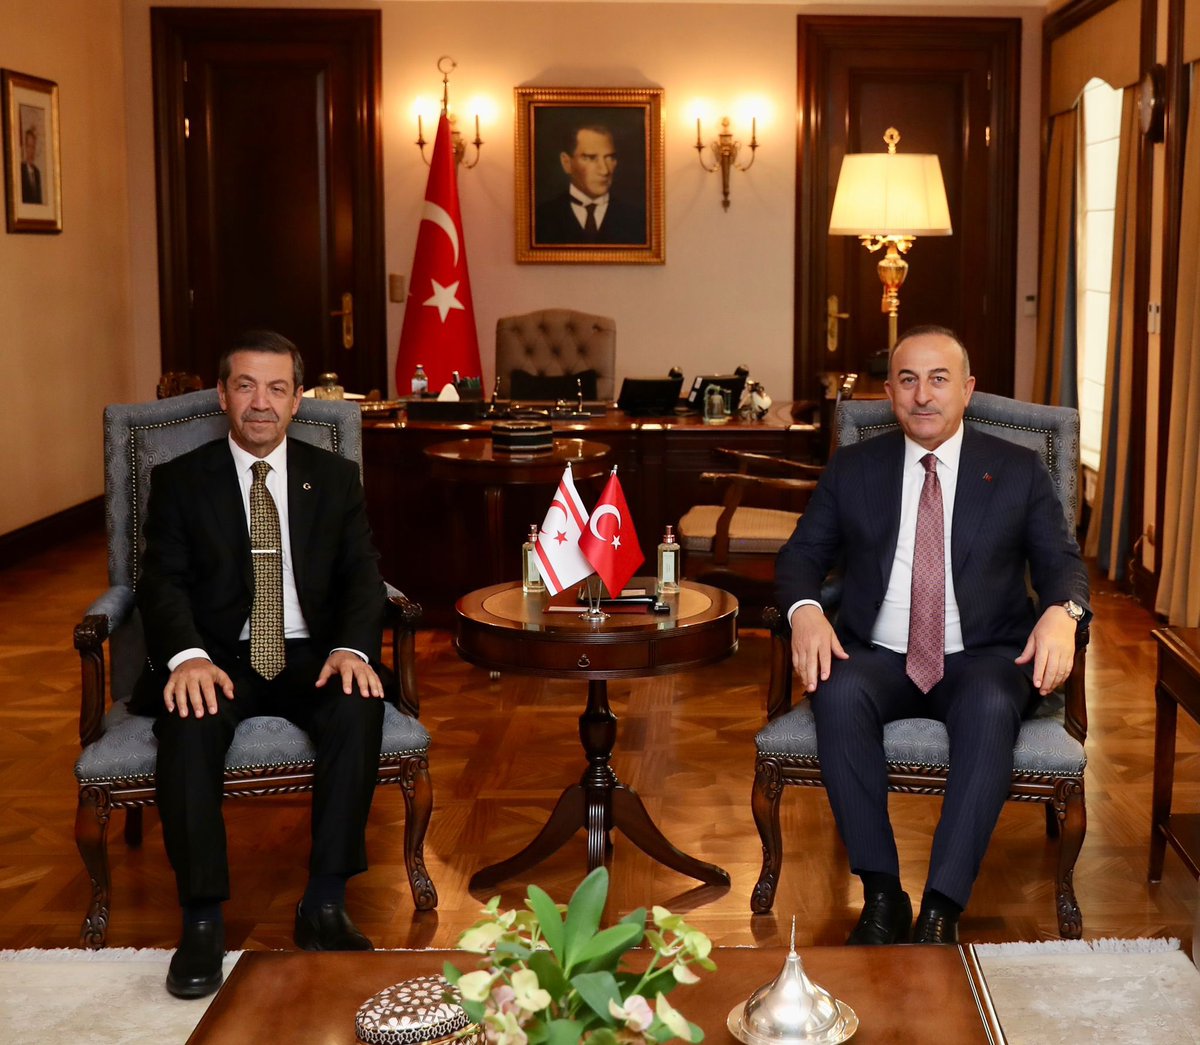 Kuzey Kıbrıs Türk Cumhuriyeti Dışişleri Bakanı Tahsin Ertuğruloğlu’yla görüştük.

KKTC’nin gözlemci üye olduğu #TürkDevletleriTeşkilatı’nın yarın yapılacak Olağanüstü Zirvesi’nin hazırlıklarını ve gündemini ele aldık.

Kıbrıs Türkü #TürkDünyası’nın ayrılmaz bir parçasıdır.